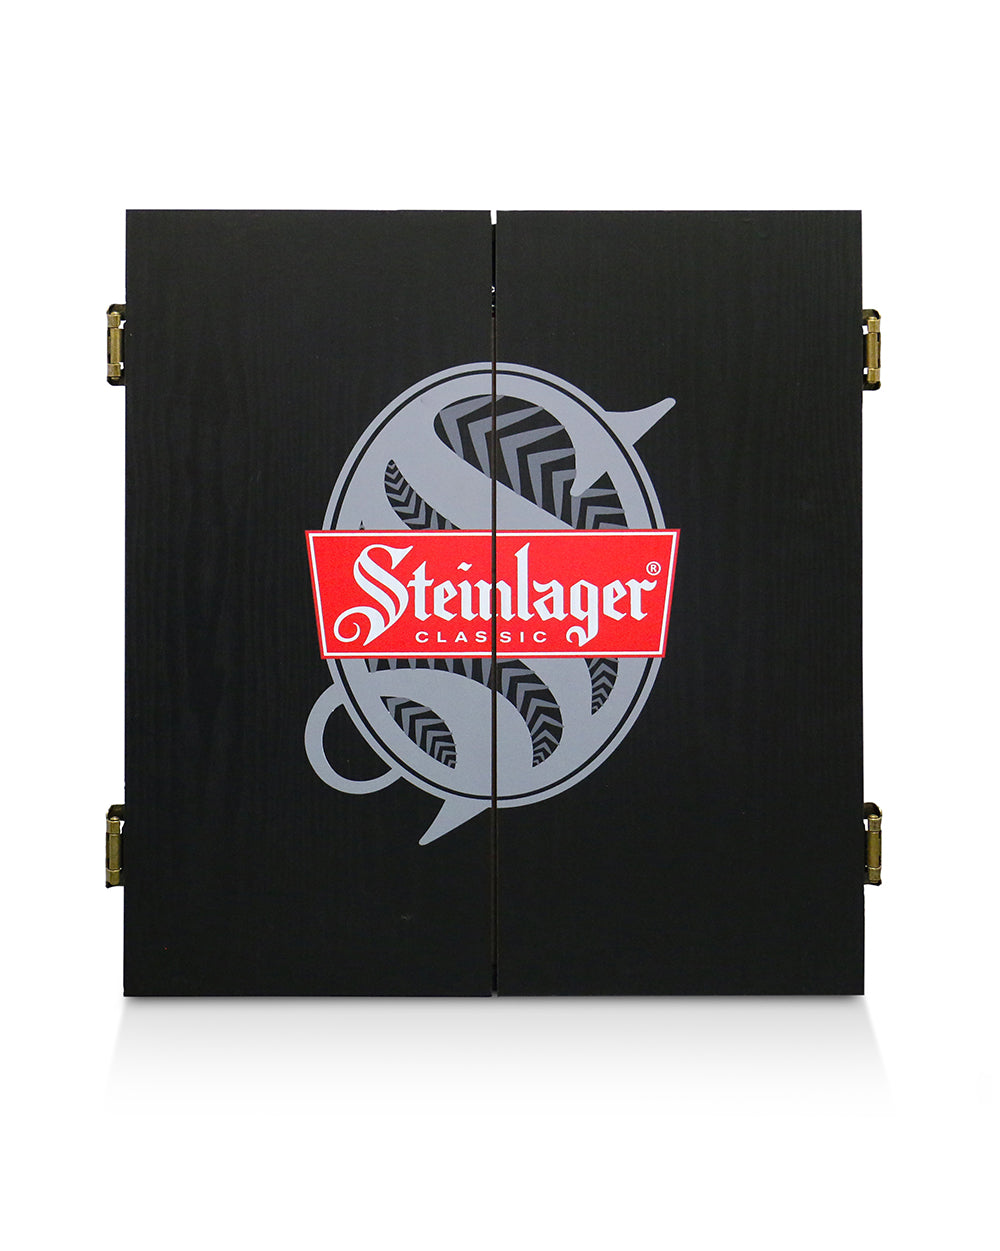 Steinlager Dartboard -  Beer Gear Apparel & Merchandise - Speights - Lion Red - VB - Tokyo Dy merch